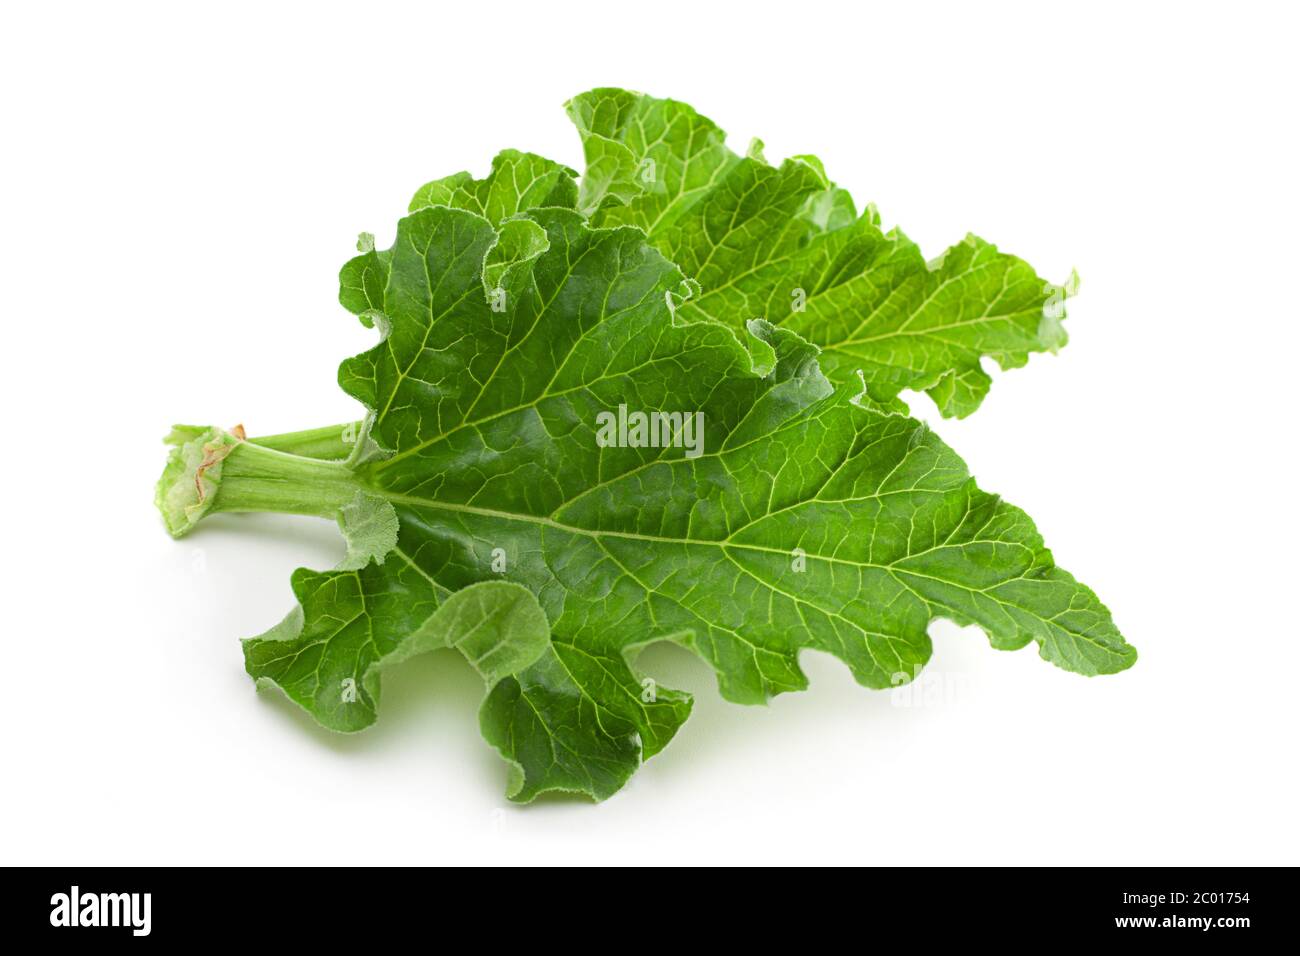 Rhubarb leaf closeup isolated on white background Stock Photo